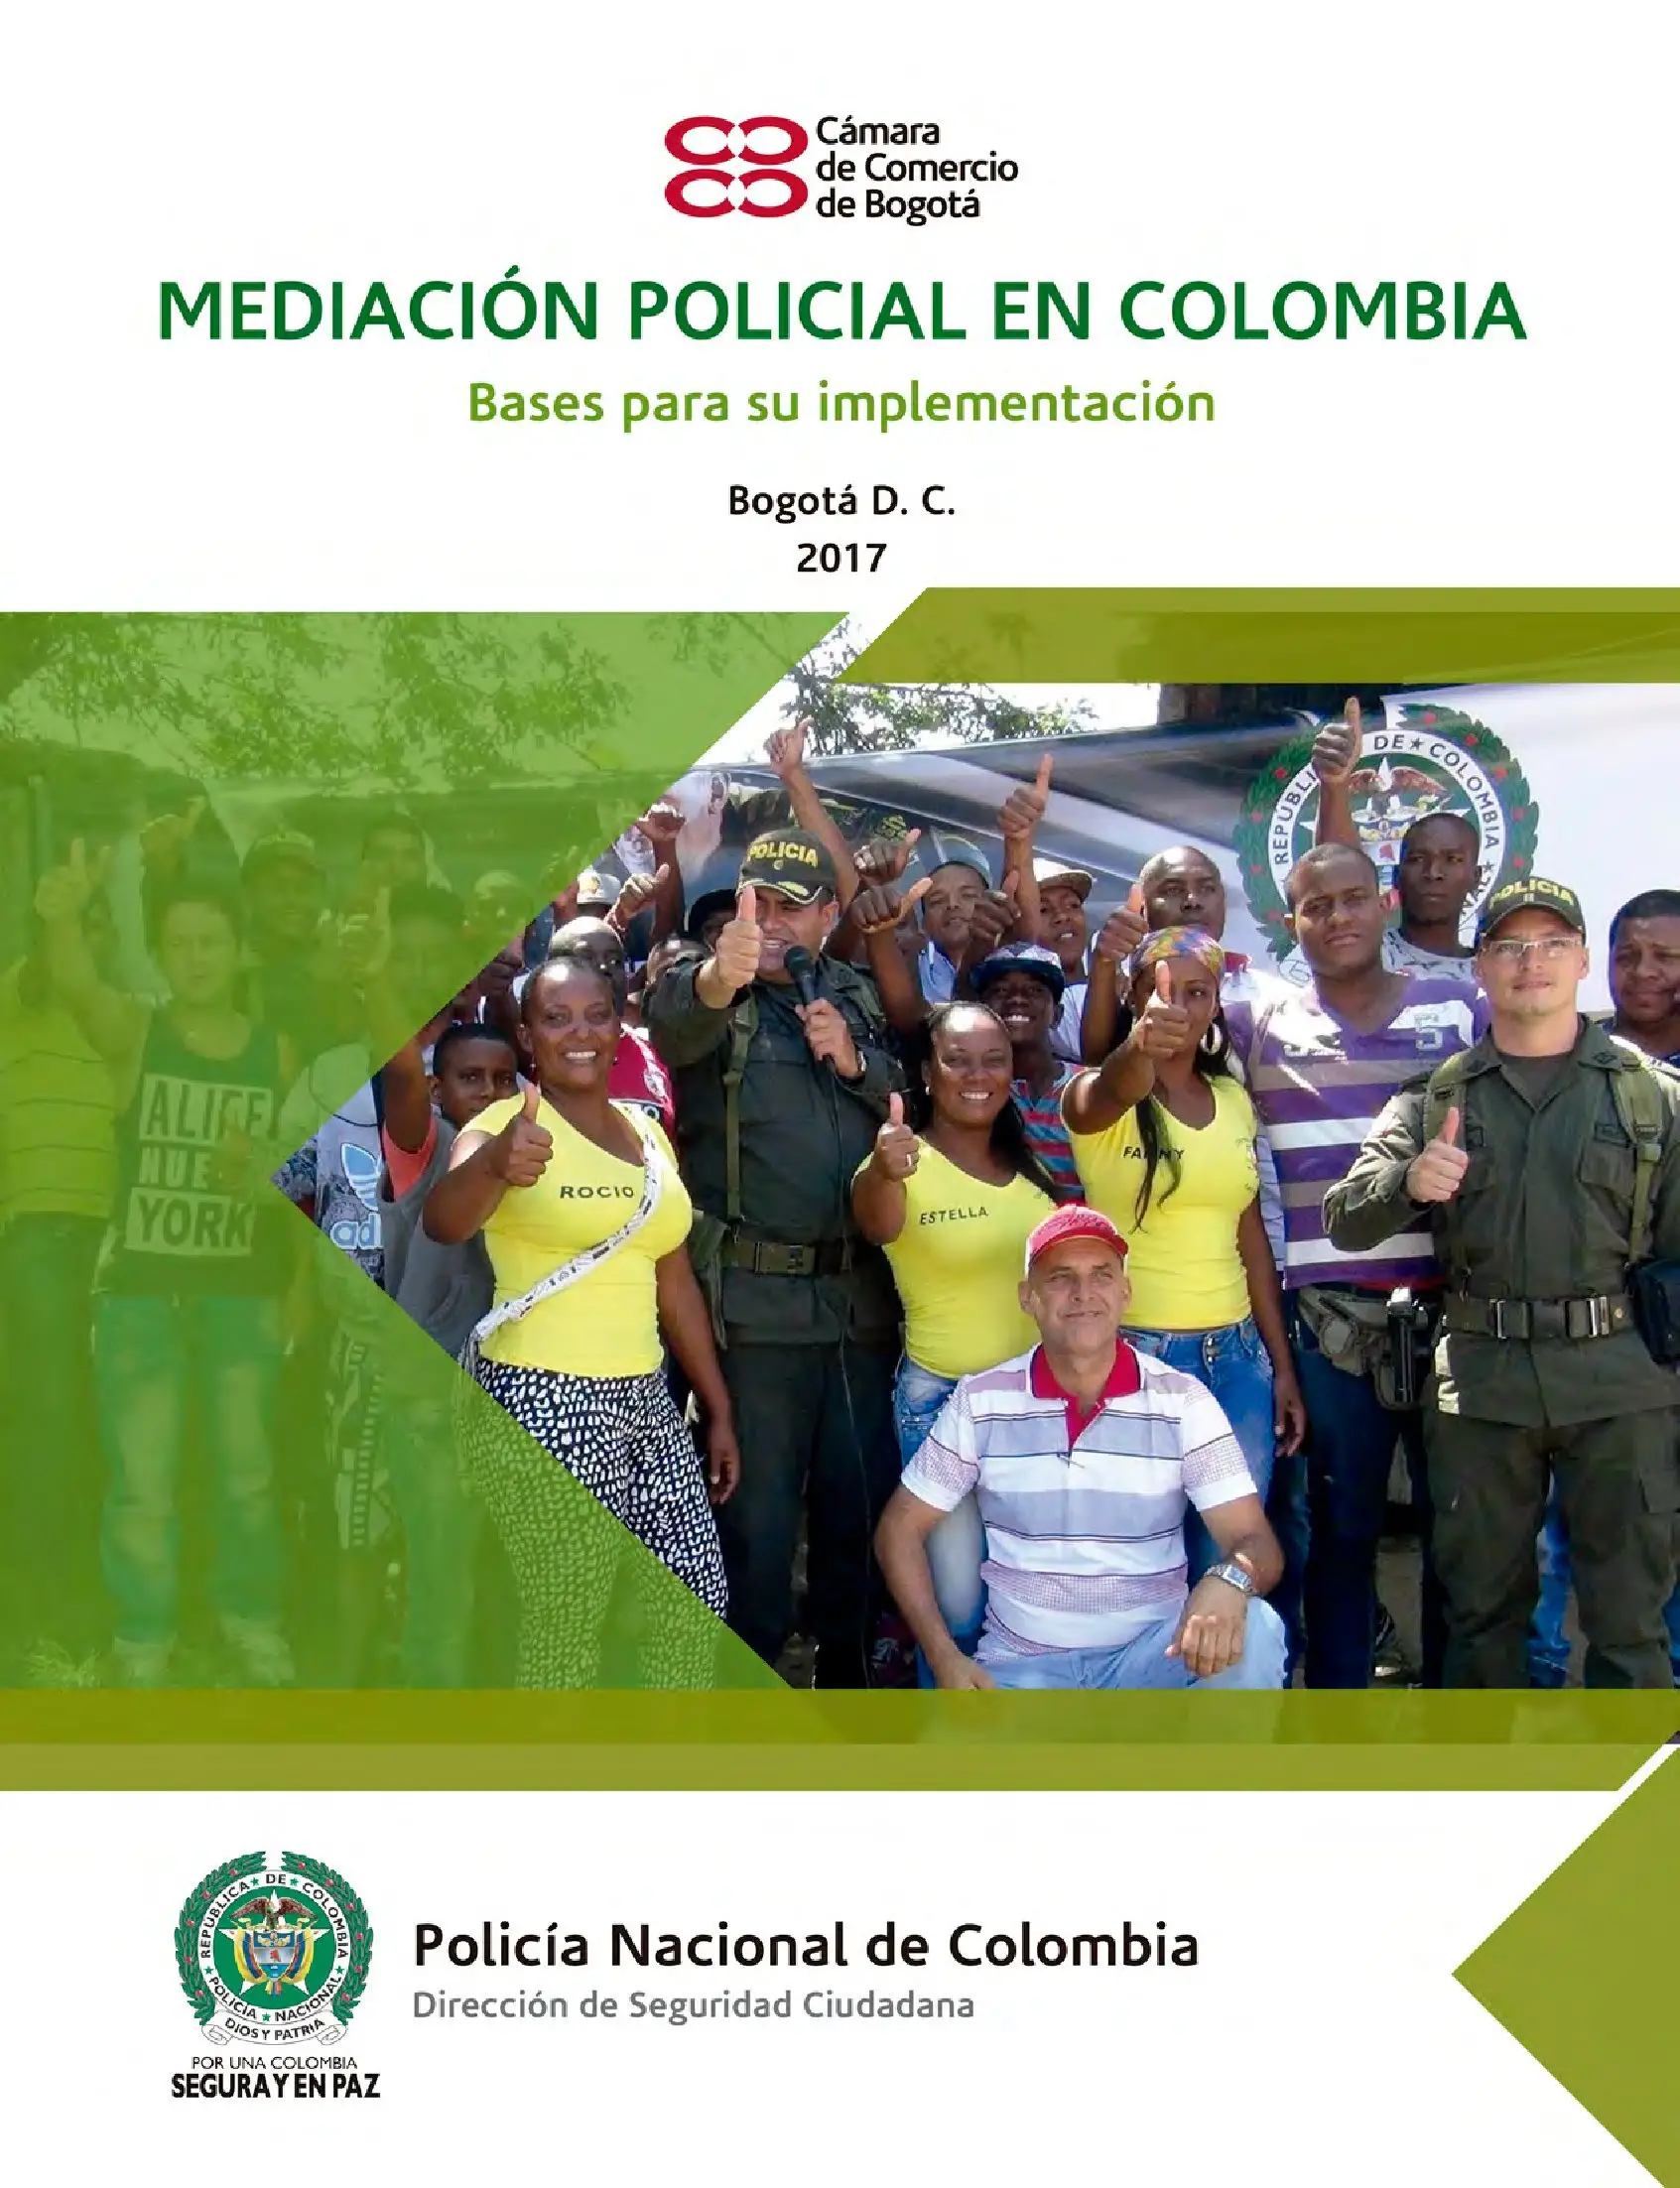 2017 Mediación Policial en Colombia_00001